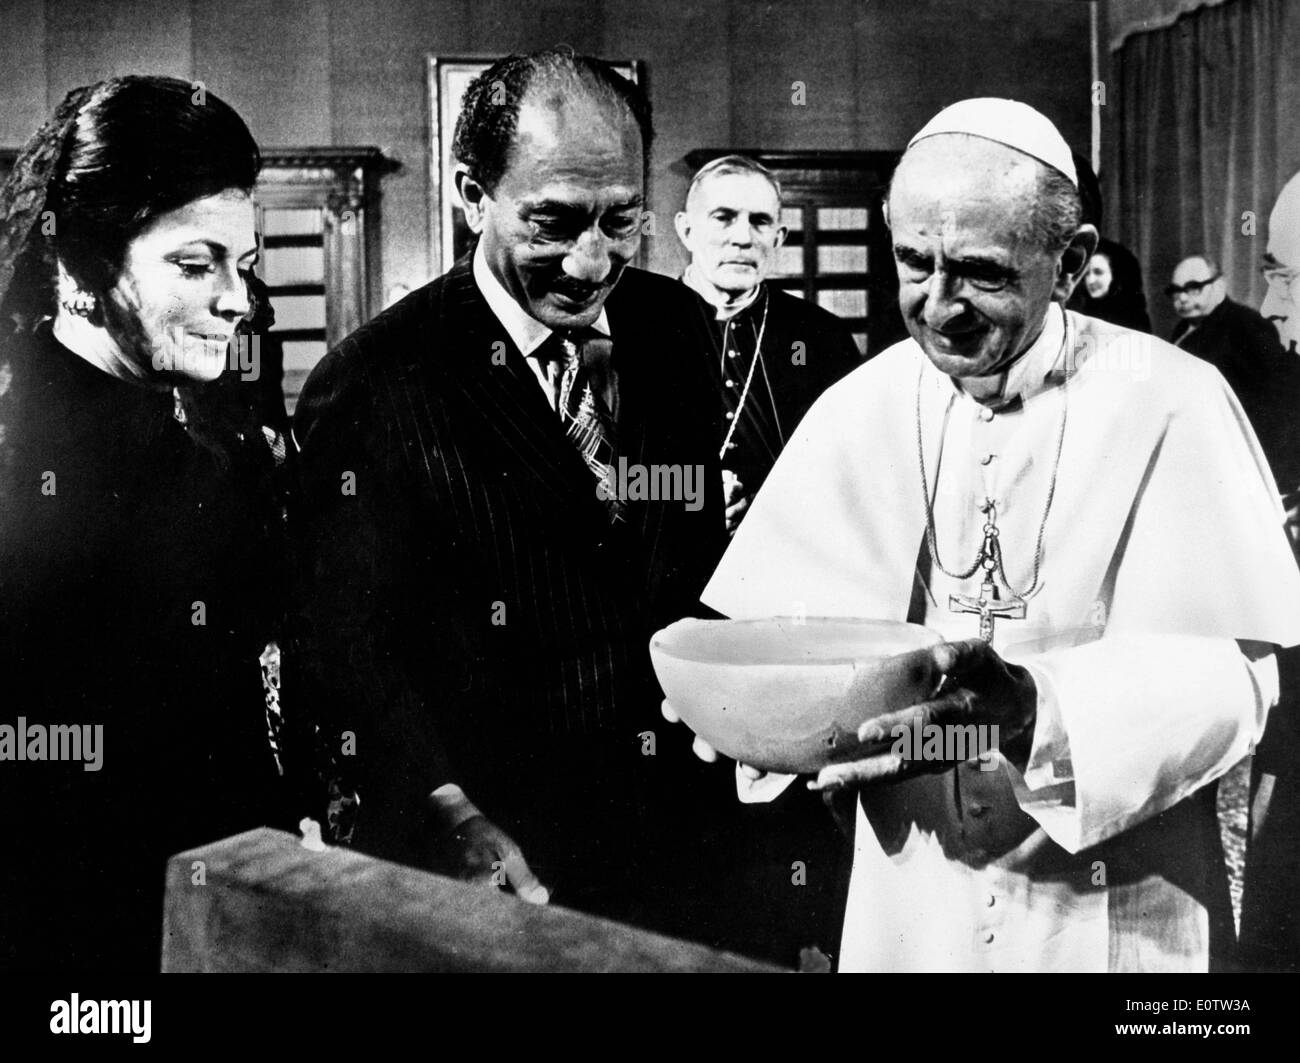 El Papa Pablo Vl sosteniendo un cuenco durante el evento Foto de stock